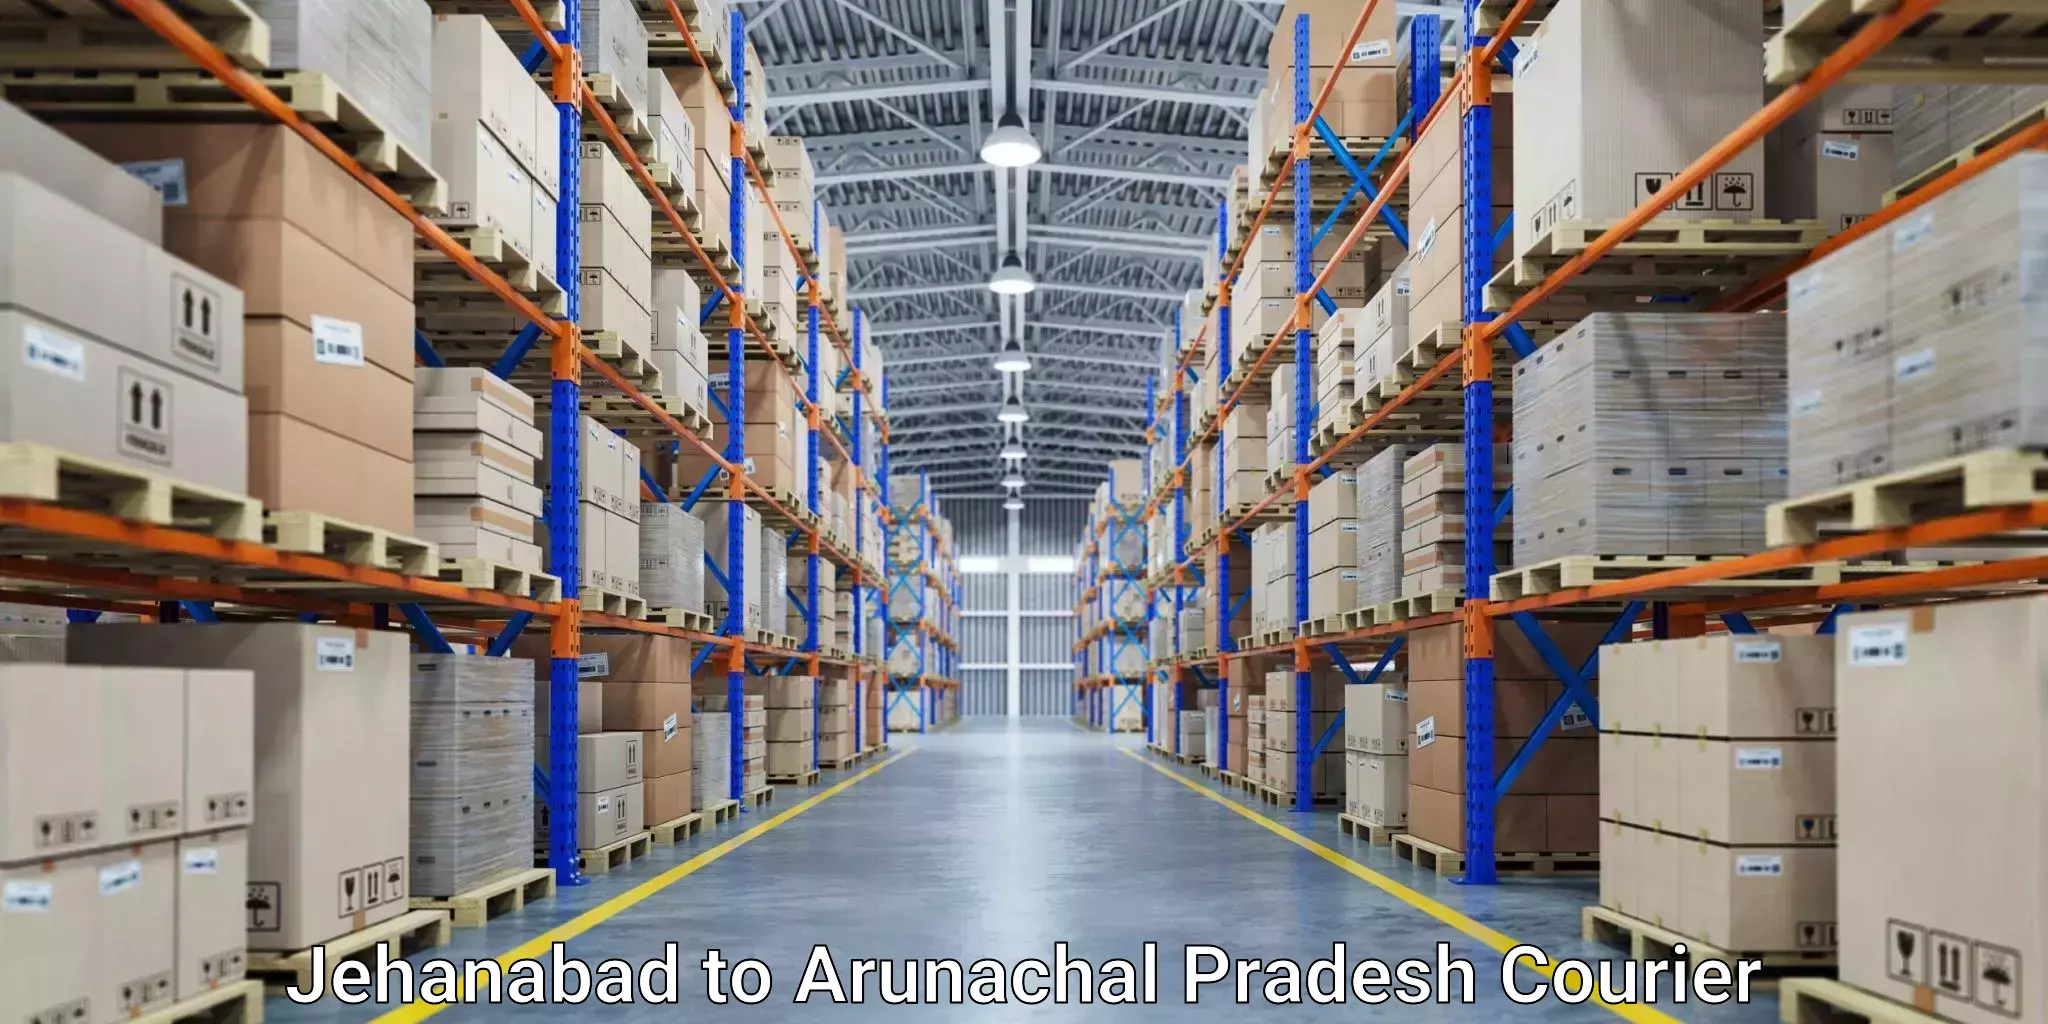 Cargo courier service Jehanabad to Arunachal Pradesh